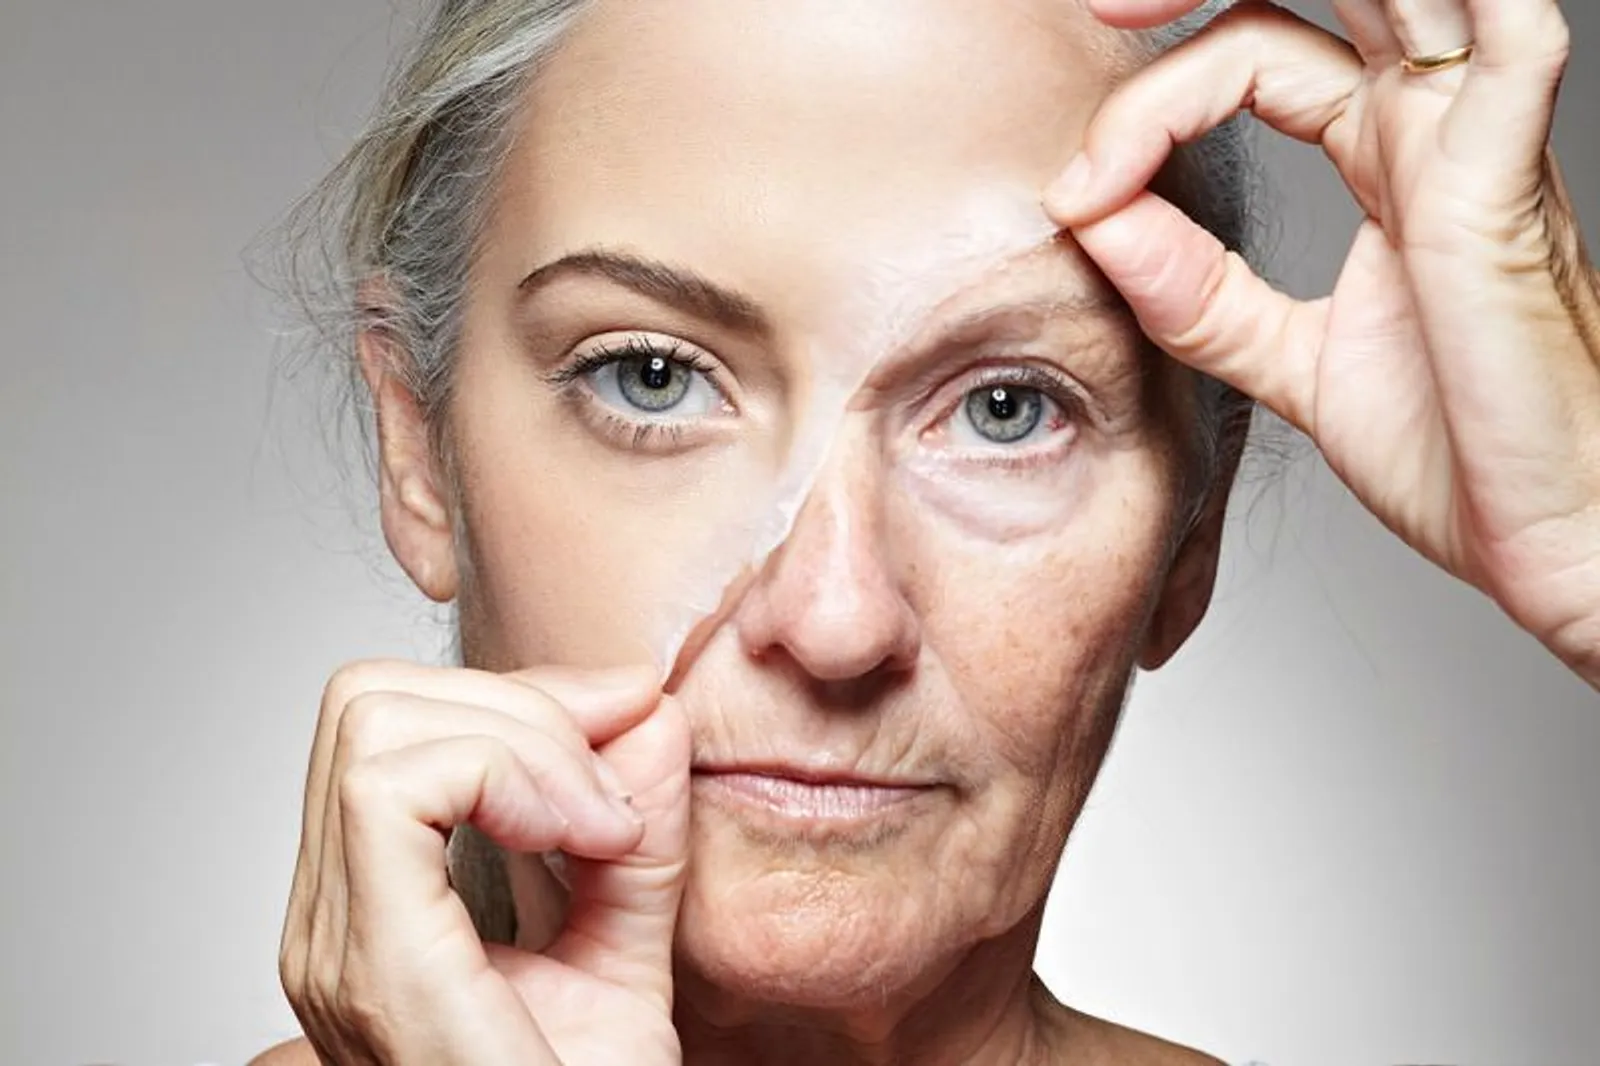 Lupa Menghapus Makeup Sebelum Tidur? Ini yang Akan Terjadi Pada Wajah